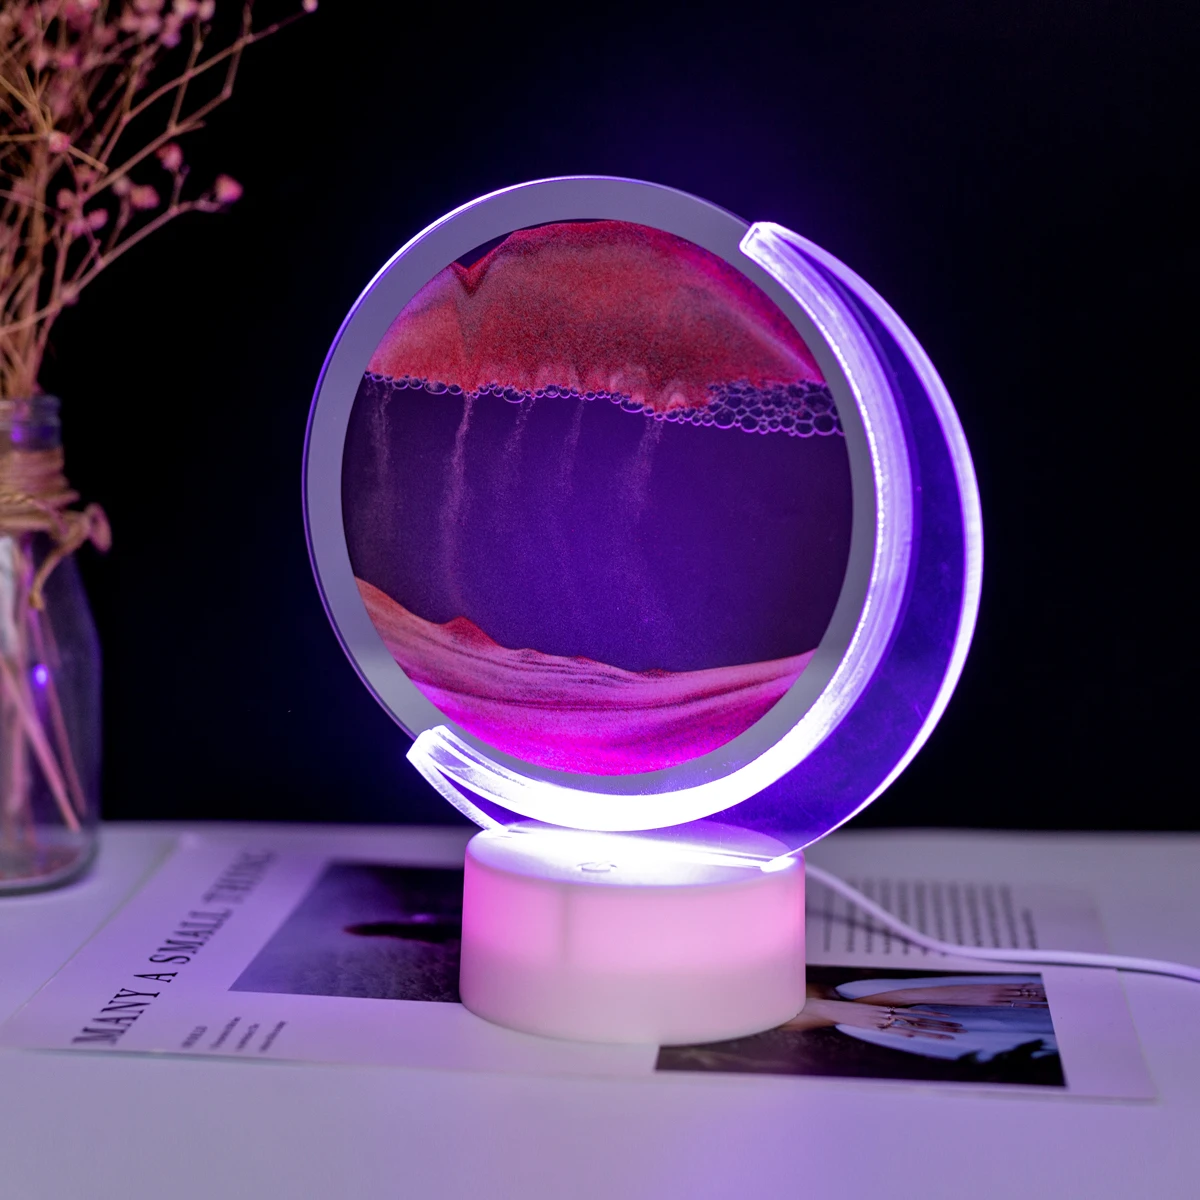 Hareketli Kum sanat resmi Yuvarlak 7 Renk USB 3D Kum Saati Derin Deniz Kum Manzarası Hareket Ekran Akan Kum Çerçeve ev Dekor İçin